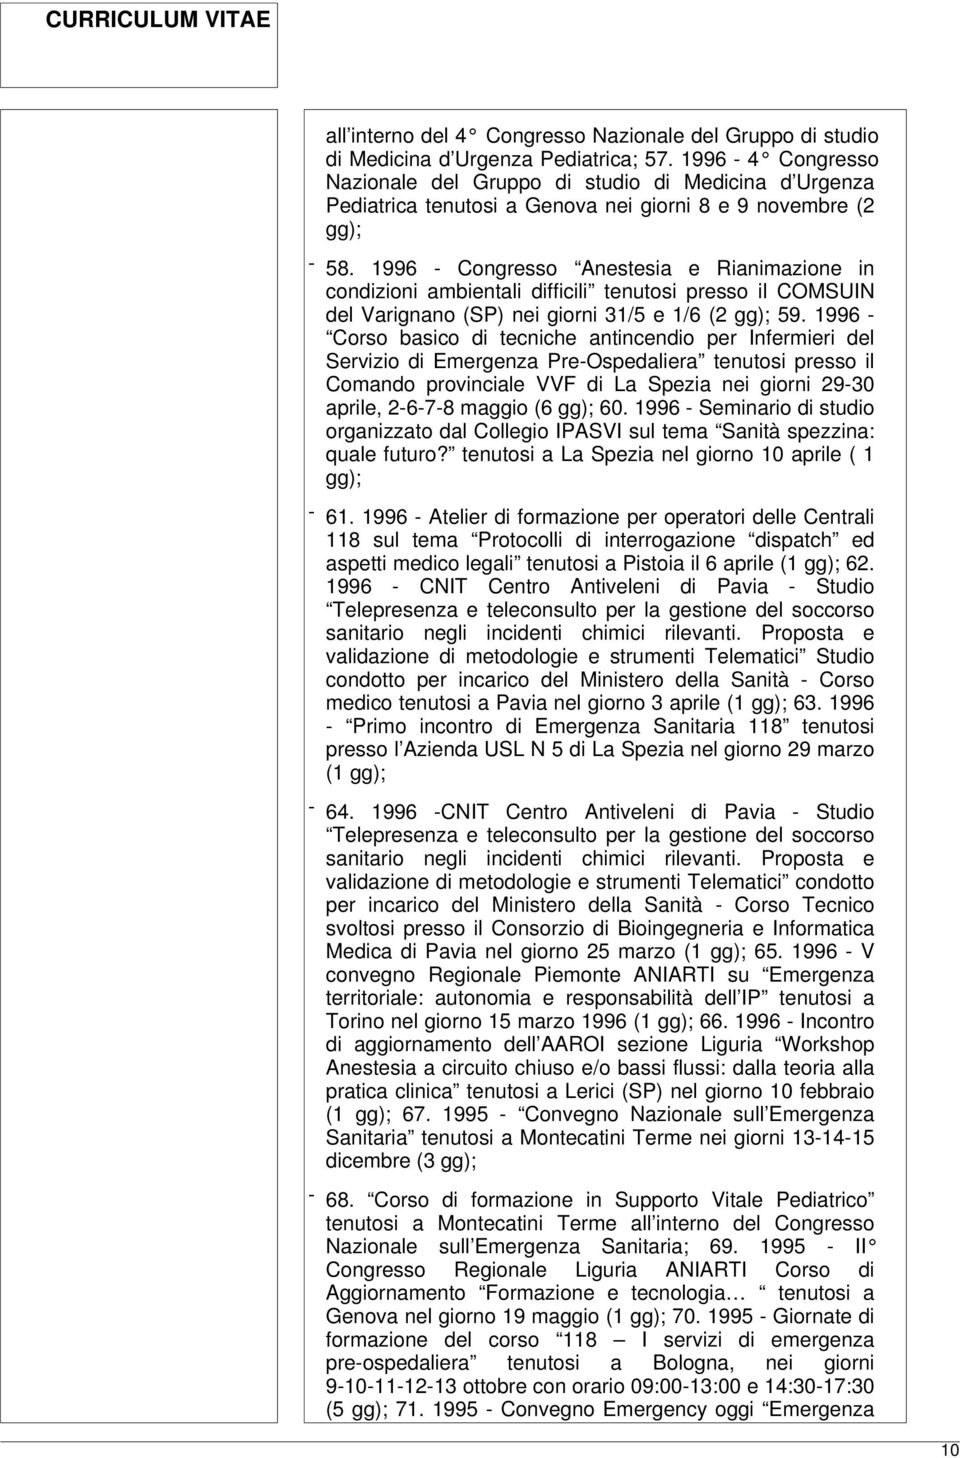 1996 - Congresso Anestesia e Rianimazione in condizioni ambientali difficili tenutosi presso il COMSUIN del Varignano (SP) nei giorni 31/5 e 1/6 (2 gg); 59.